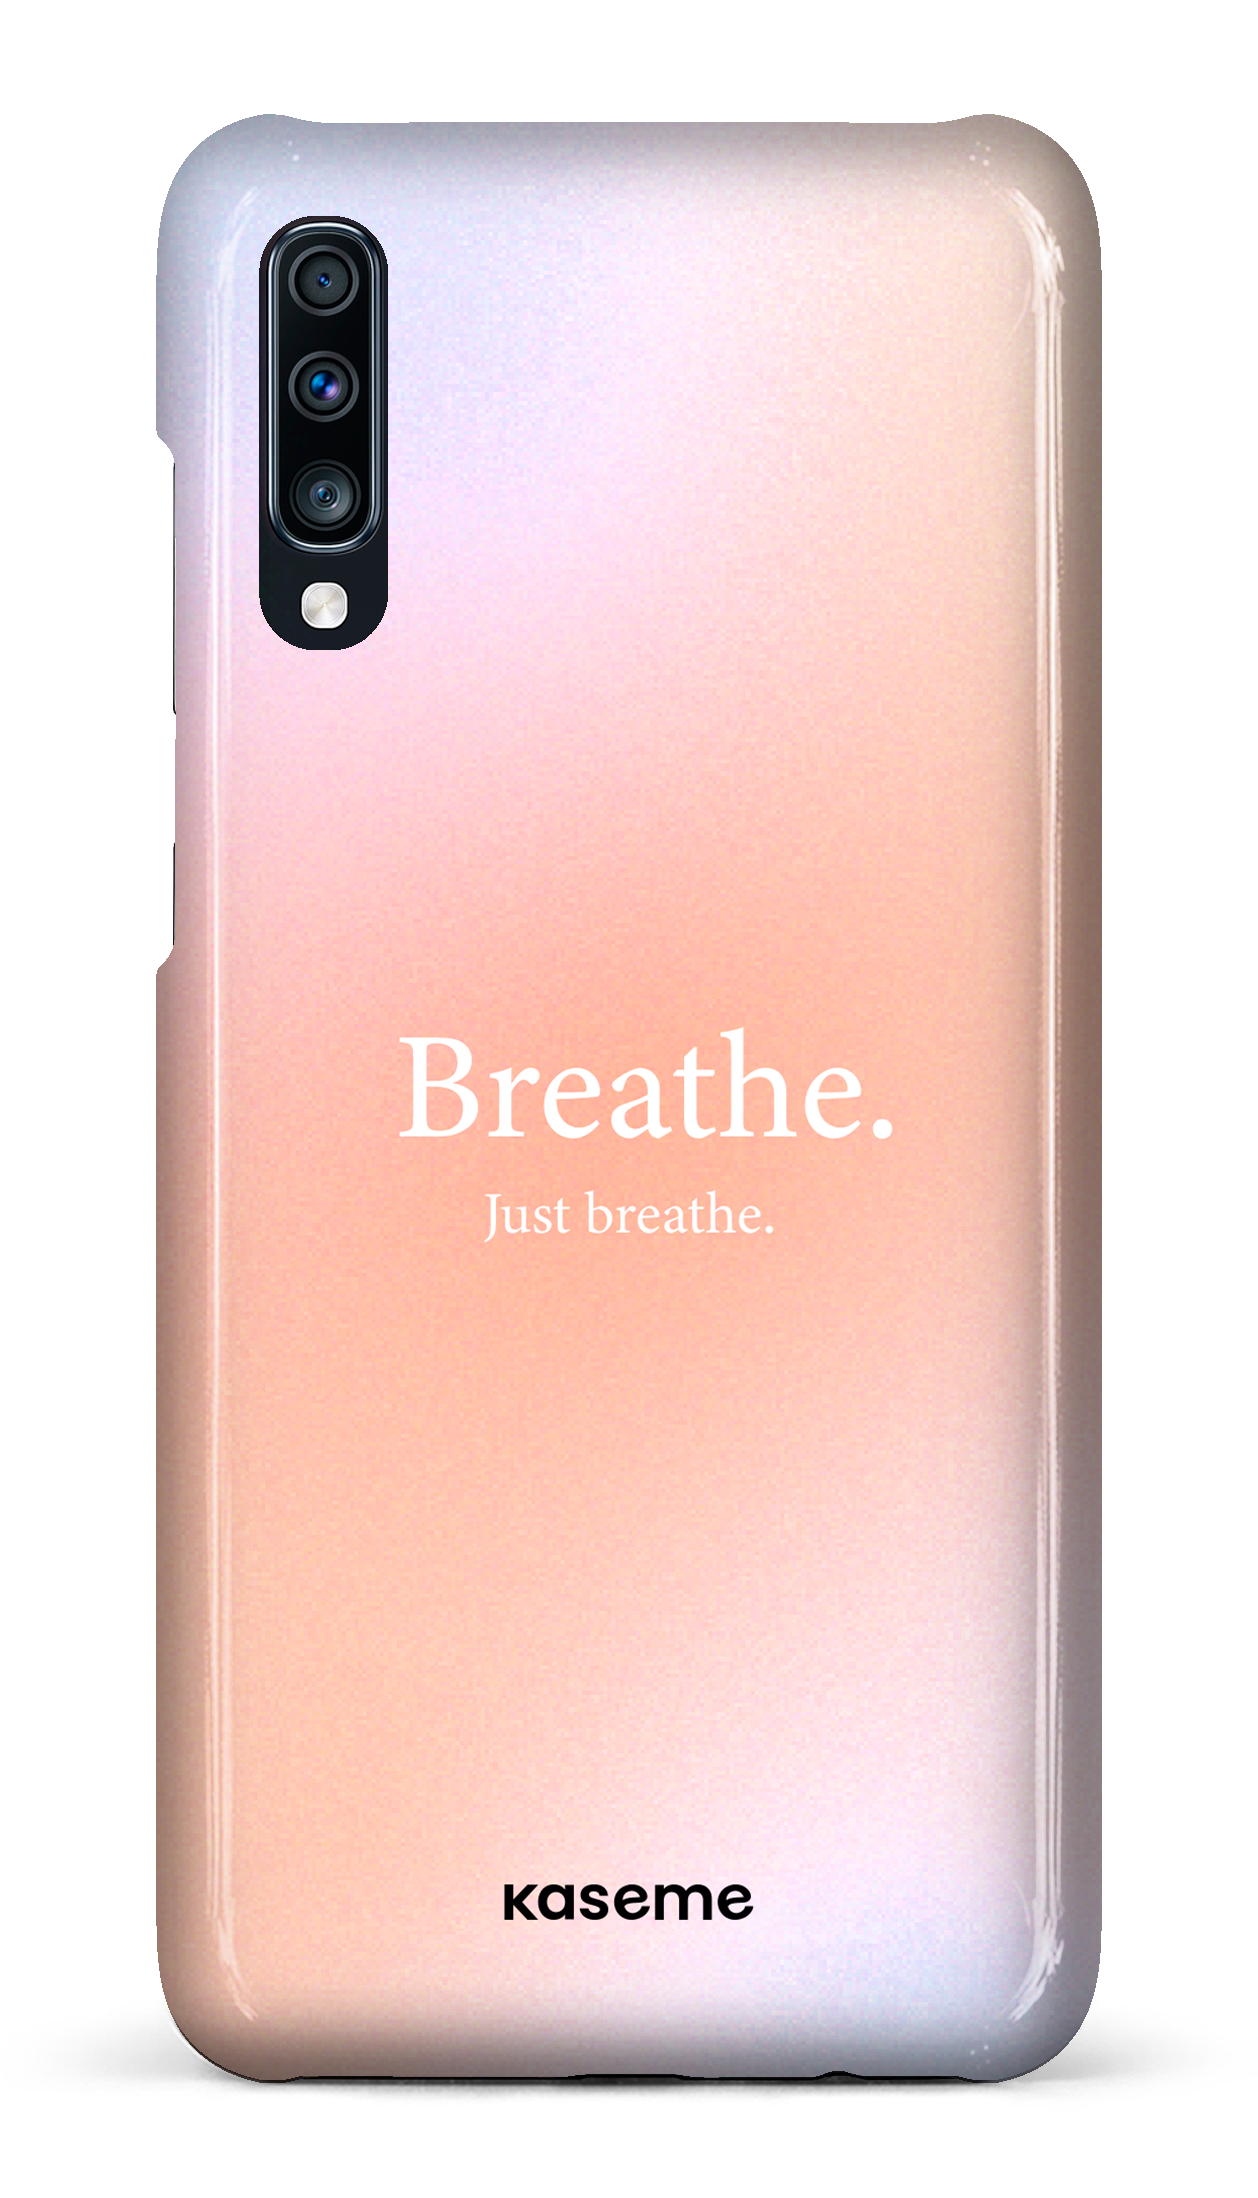 Just breathe - Galaxy A70